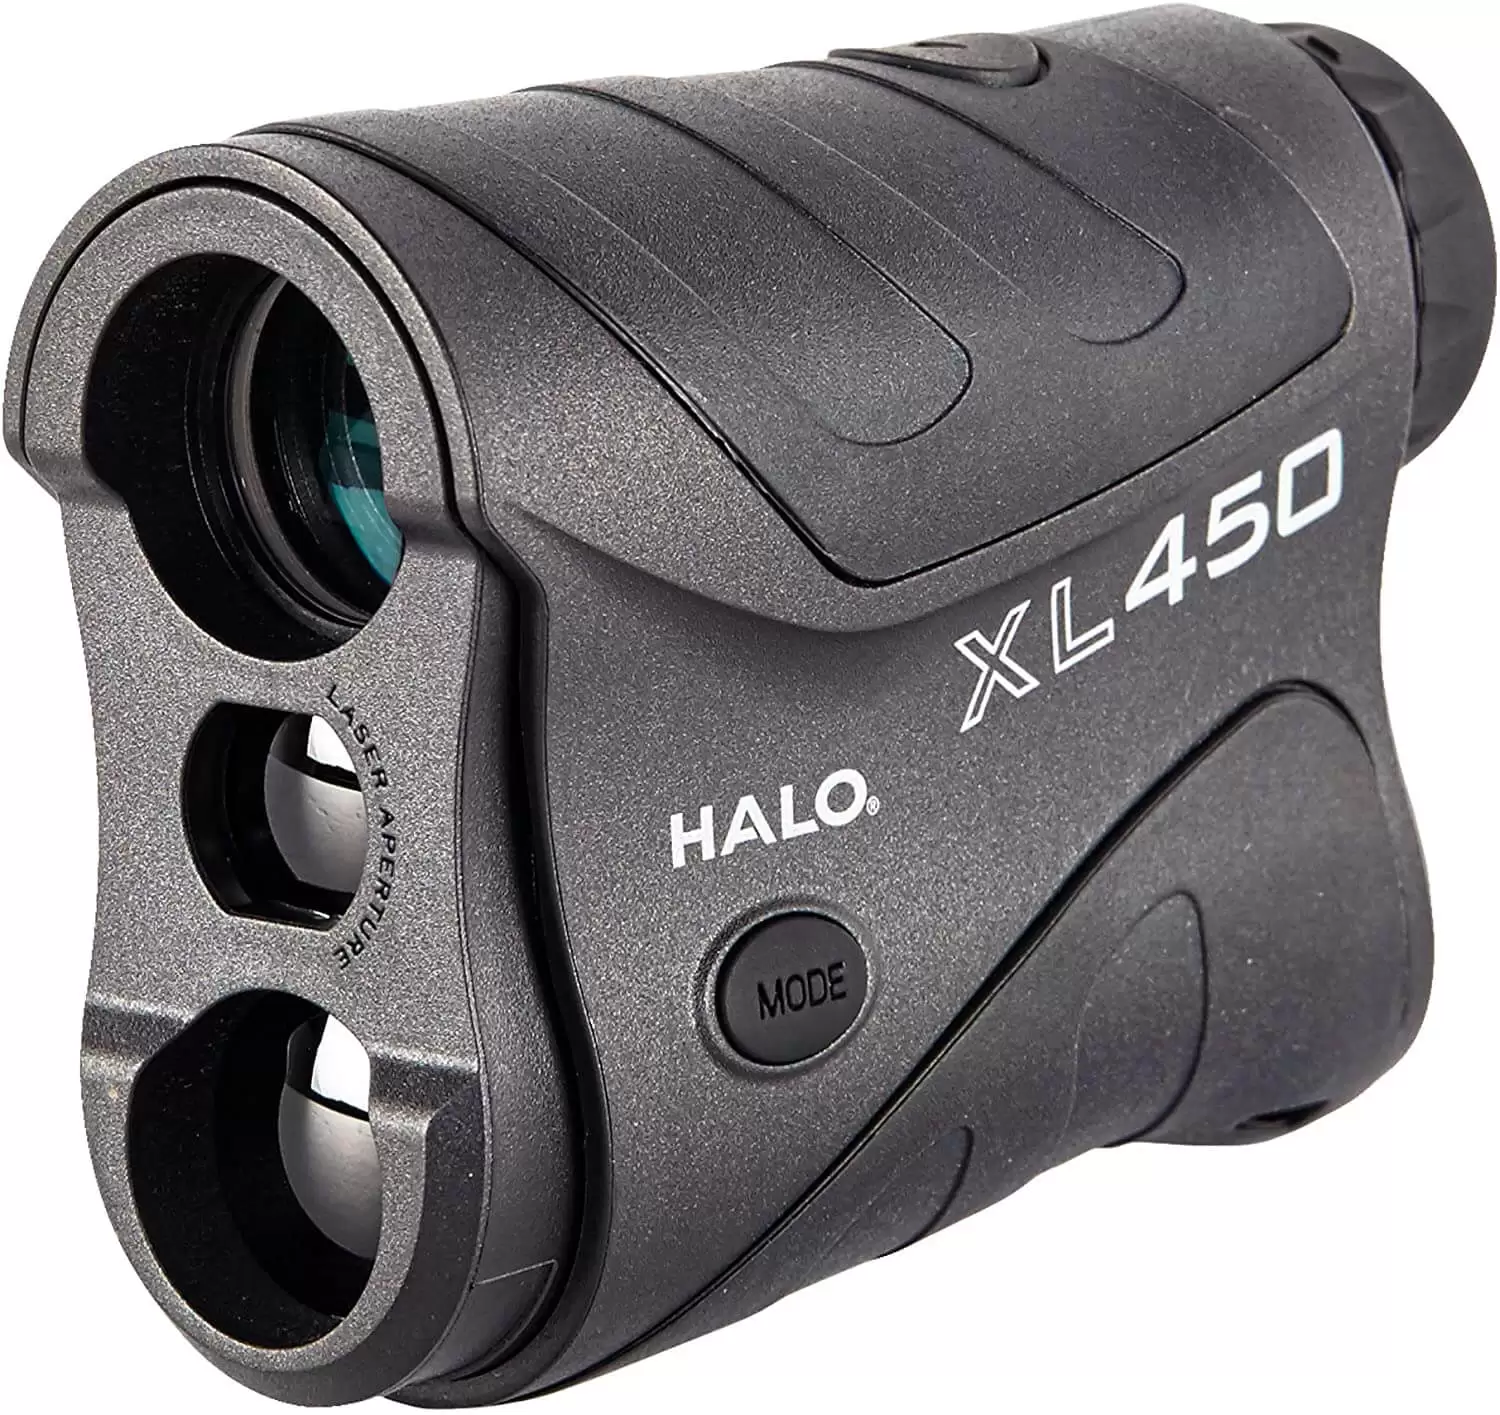 Halo XL450 Laser Rangefinder with Arc Technology